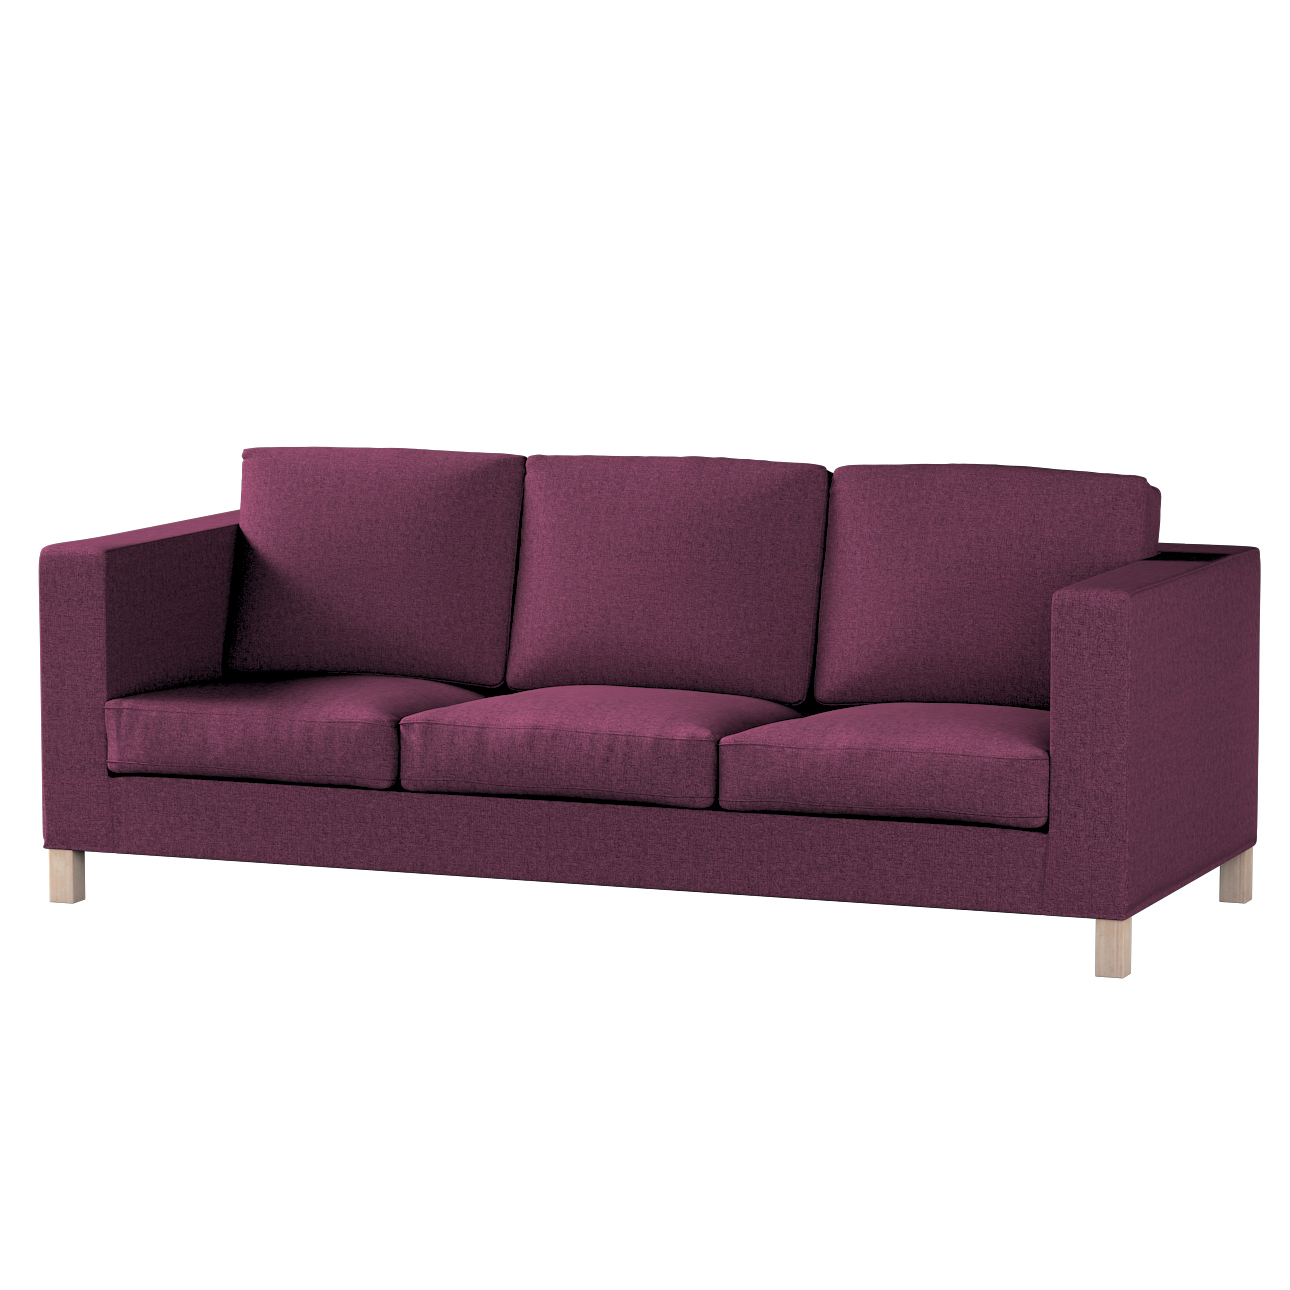 Bezug für Karlanda 3-Sitzer Sofa nicht ausklappbar, kurz, pflaumenviolett, günstig online kaufen